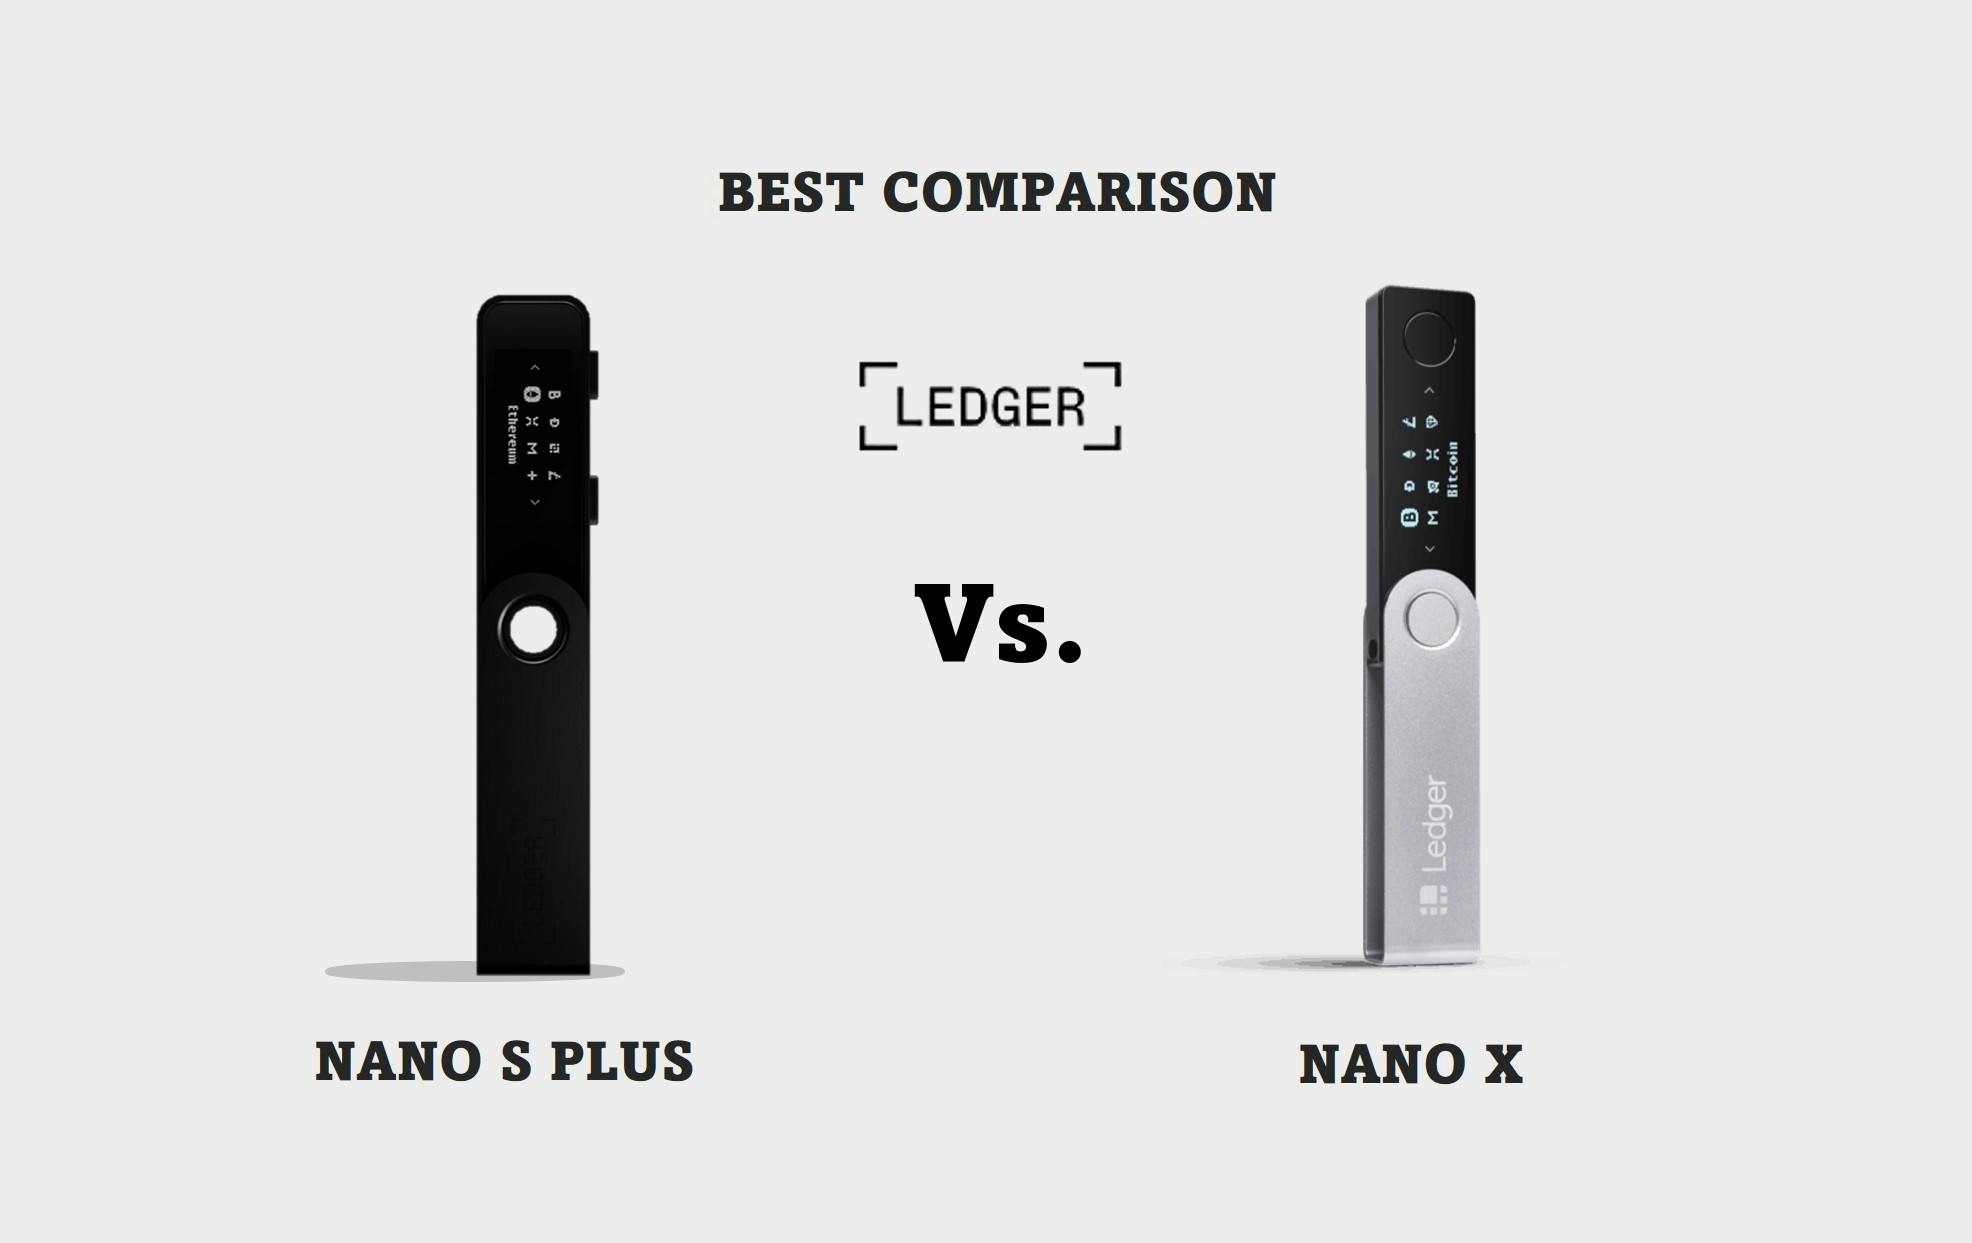 Ledger Nano S PLUS Vs. Ledger Nano X (Best Comparison)